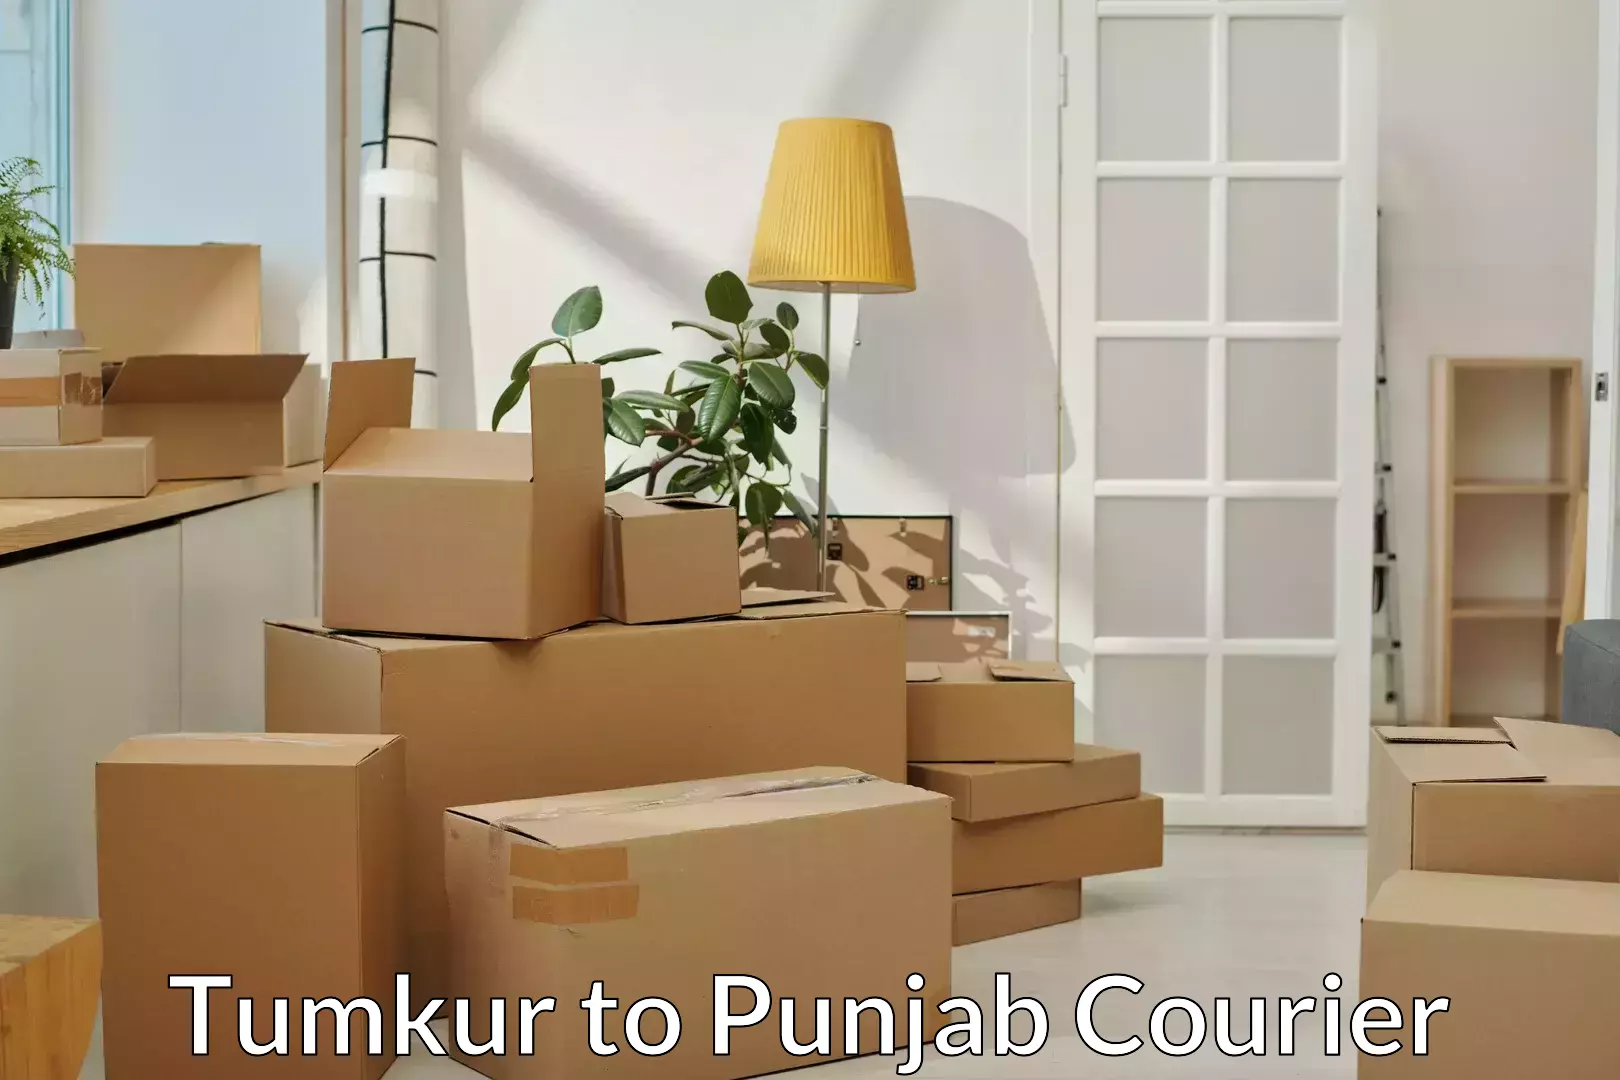 Stress-free furniture moving Tumkur to Punjab